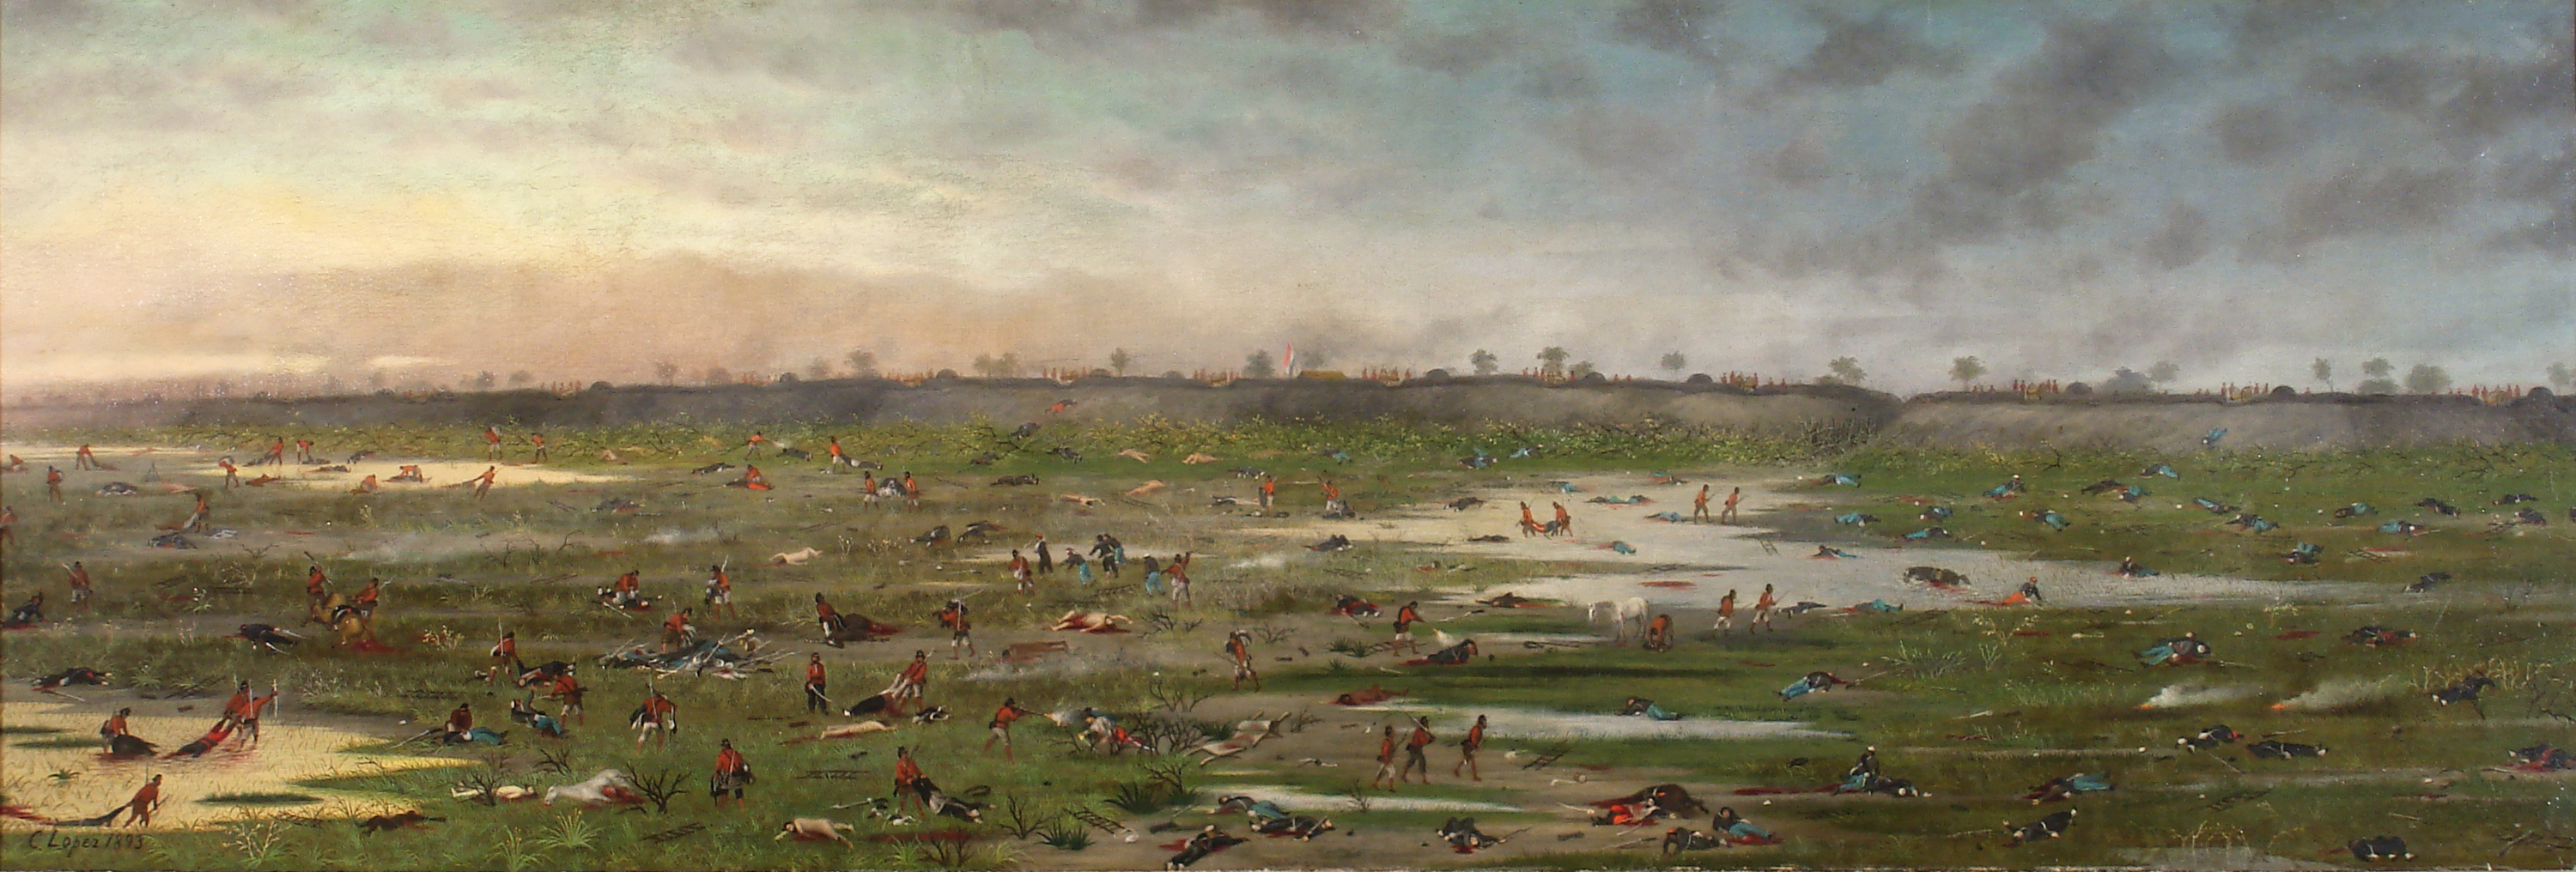 بعد معركة كوروبايتي by Cándido López - 1893 - 50,6 x 149,5 cm 